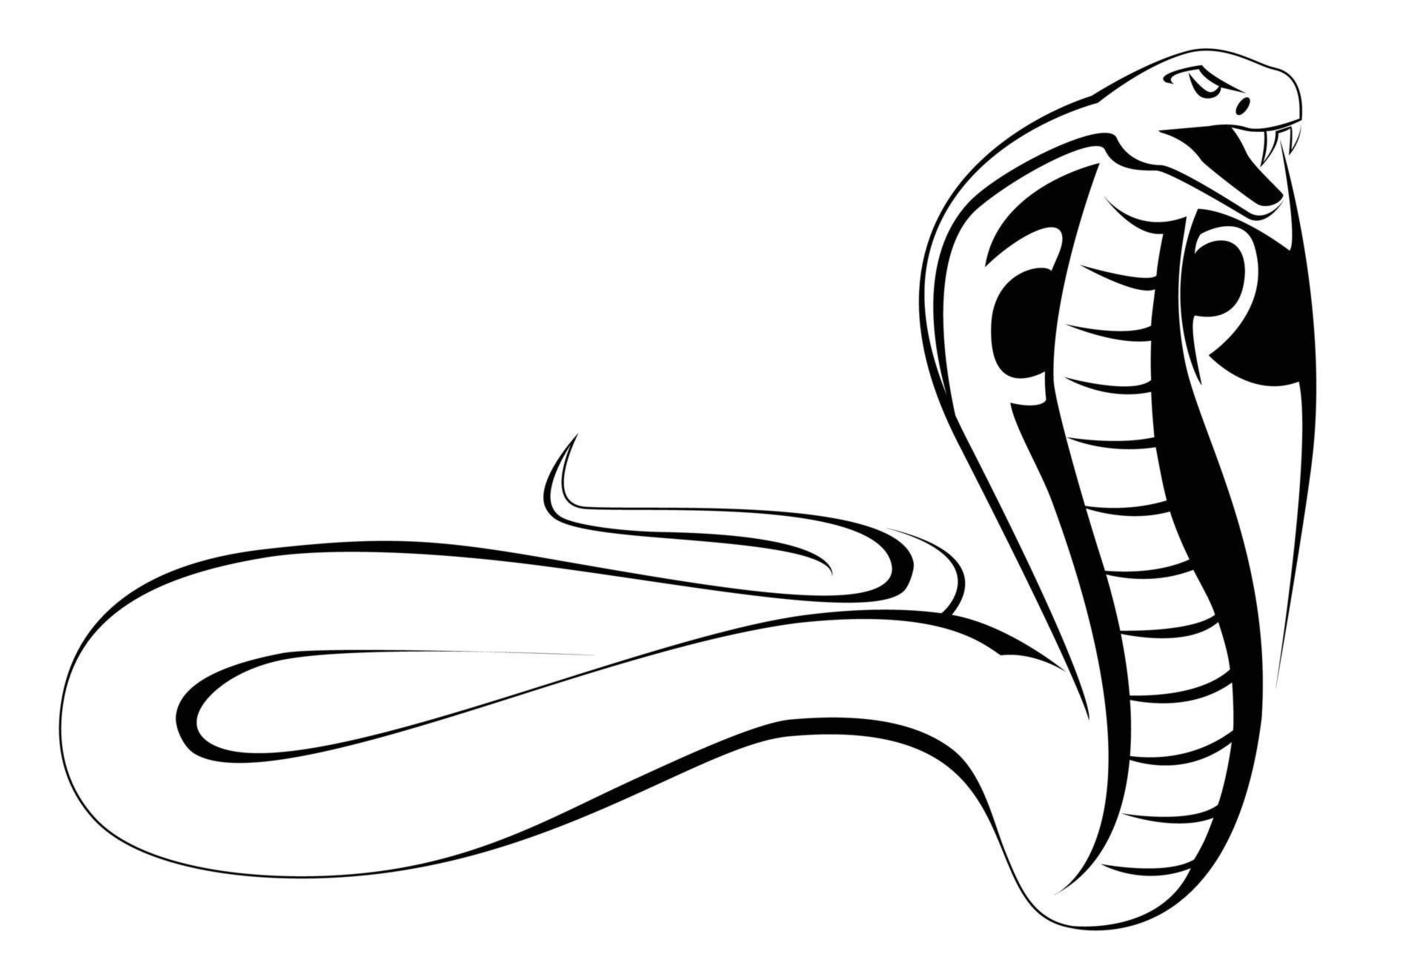 Kobra-Vektor-Illustration vektor